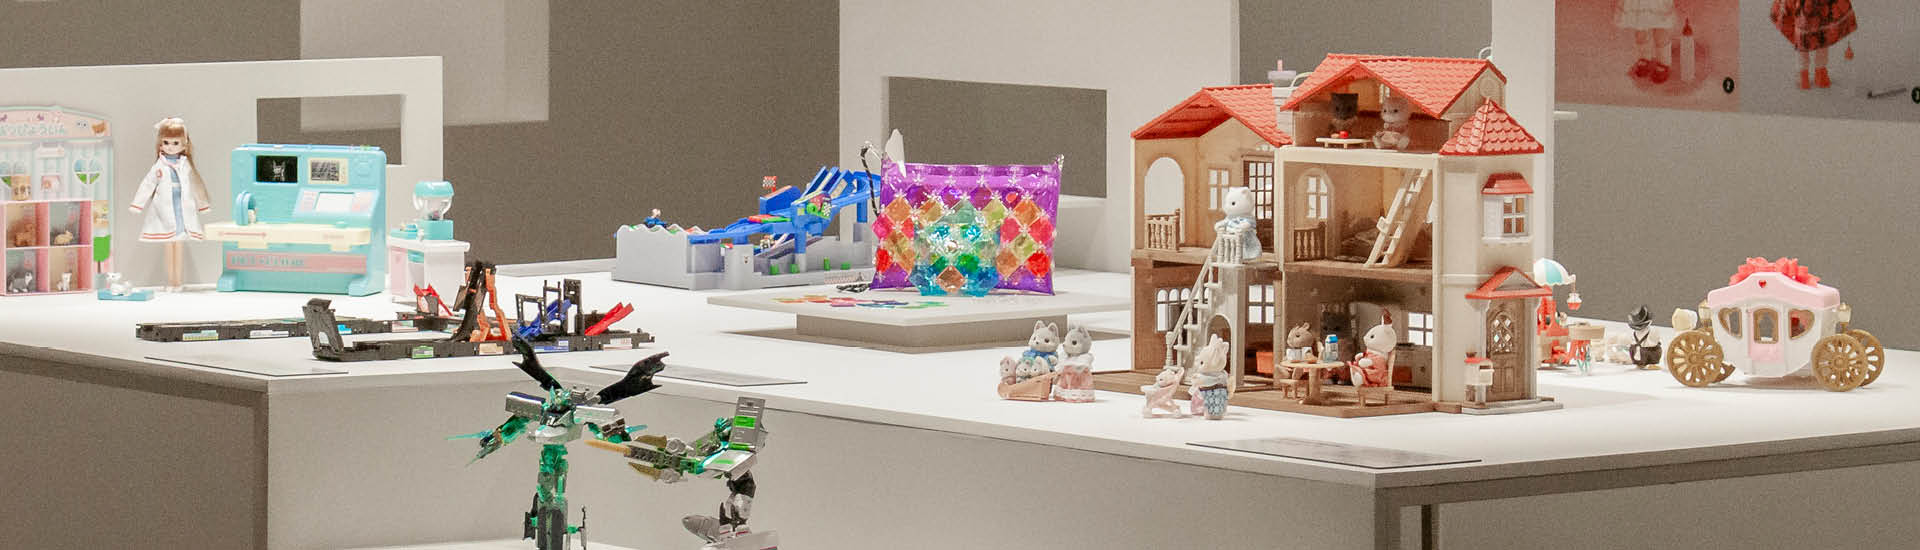 Brinquedos expostos em mesas brancas na exposição 'Doshin: os encantos dos brinquedos japoneses'